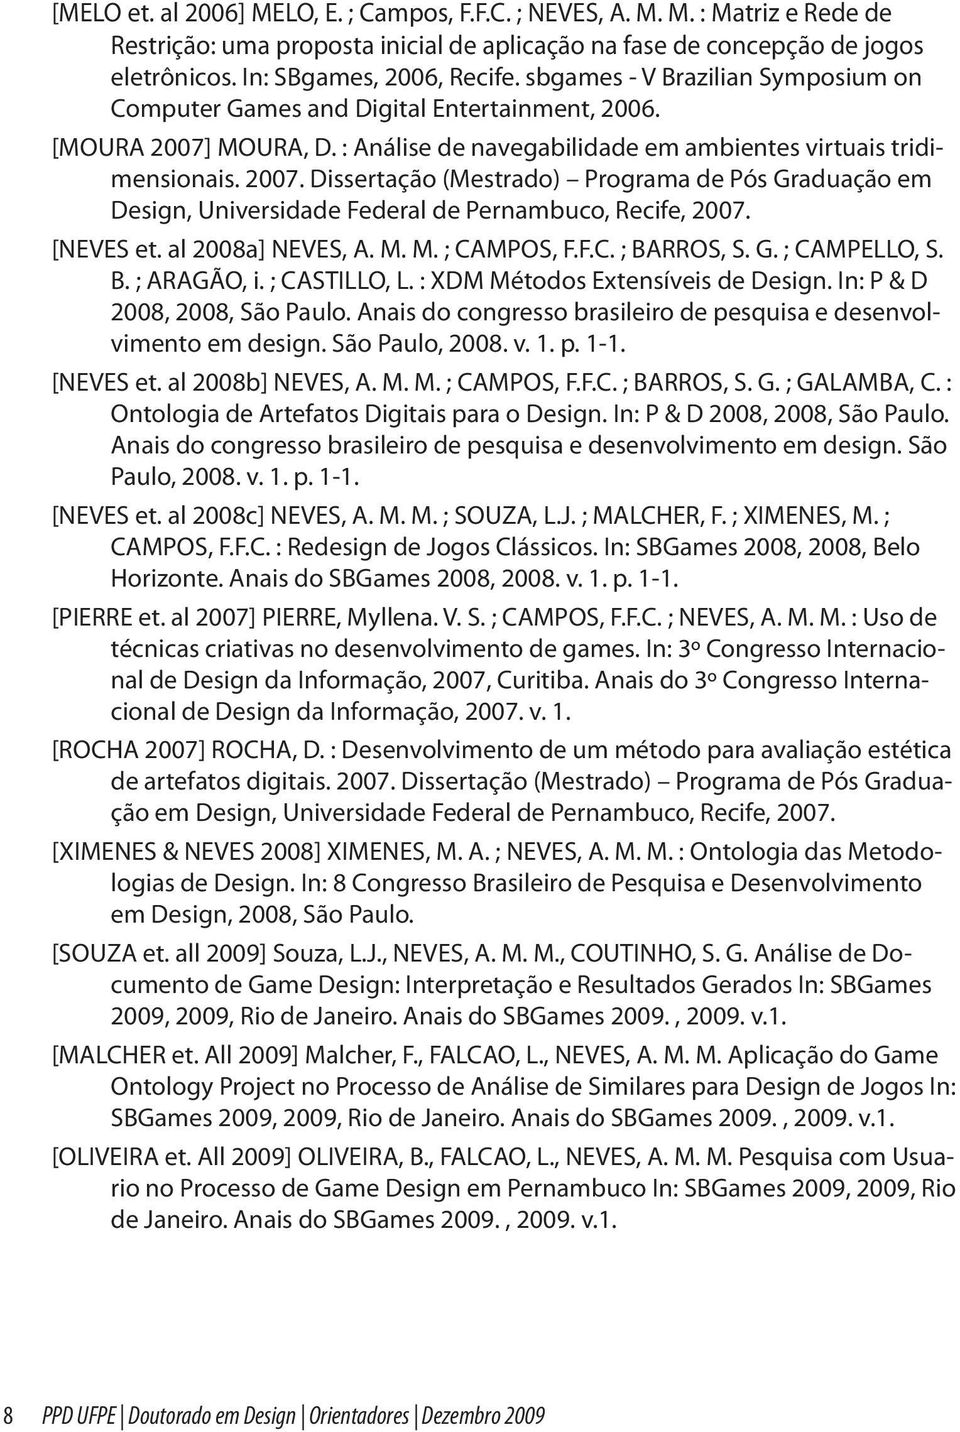 MOURA, D. : Análise de navegabilidade em ambientes virtuais tridimensionais. 2007. Dissertação (Mestrado) Programa de Pós Graduação em Design, Universidade Federal de Pernambuco, Recife, 2007.